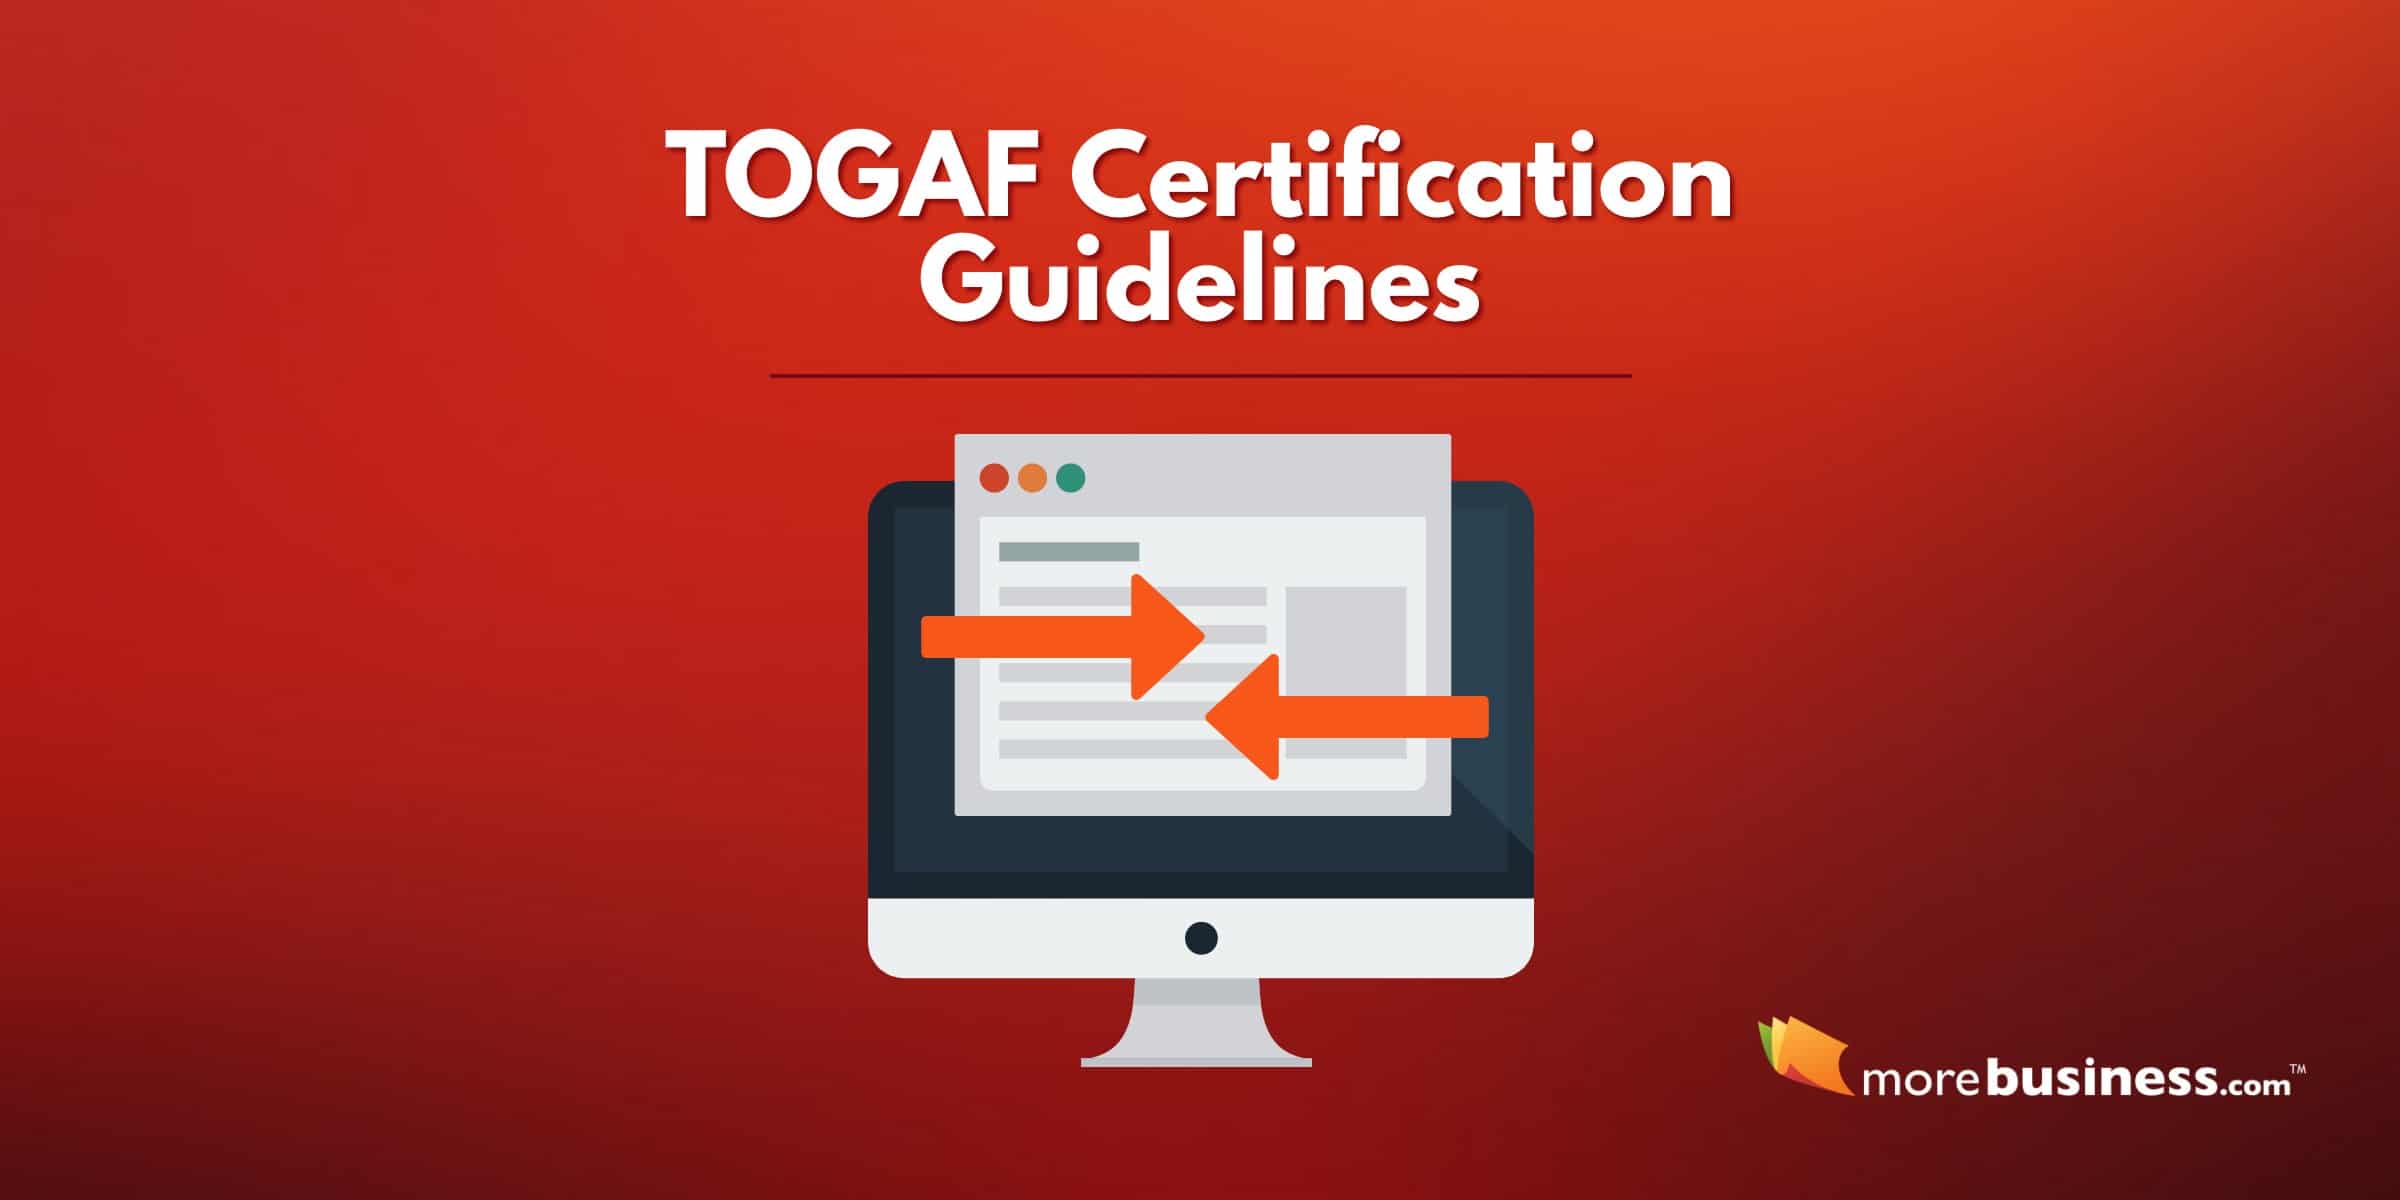 TOGAF Certification Guidelines